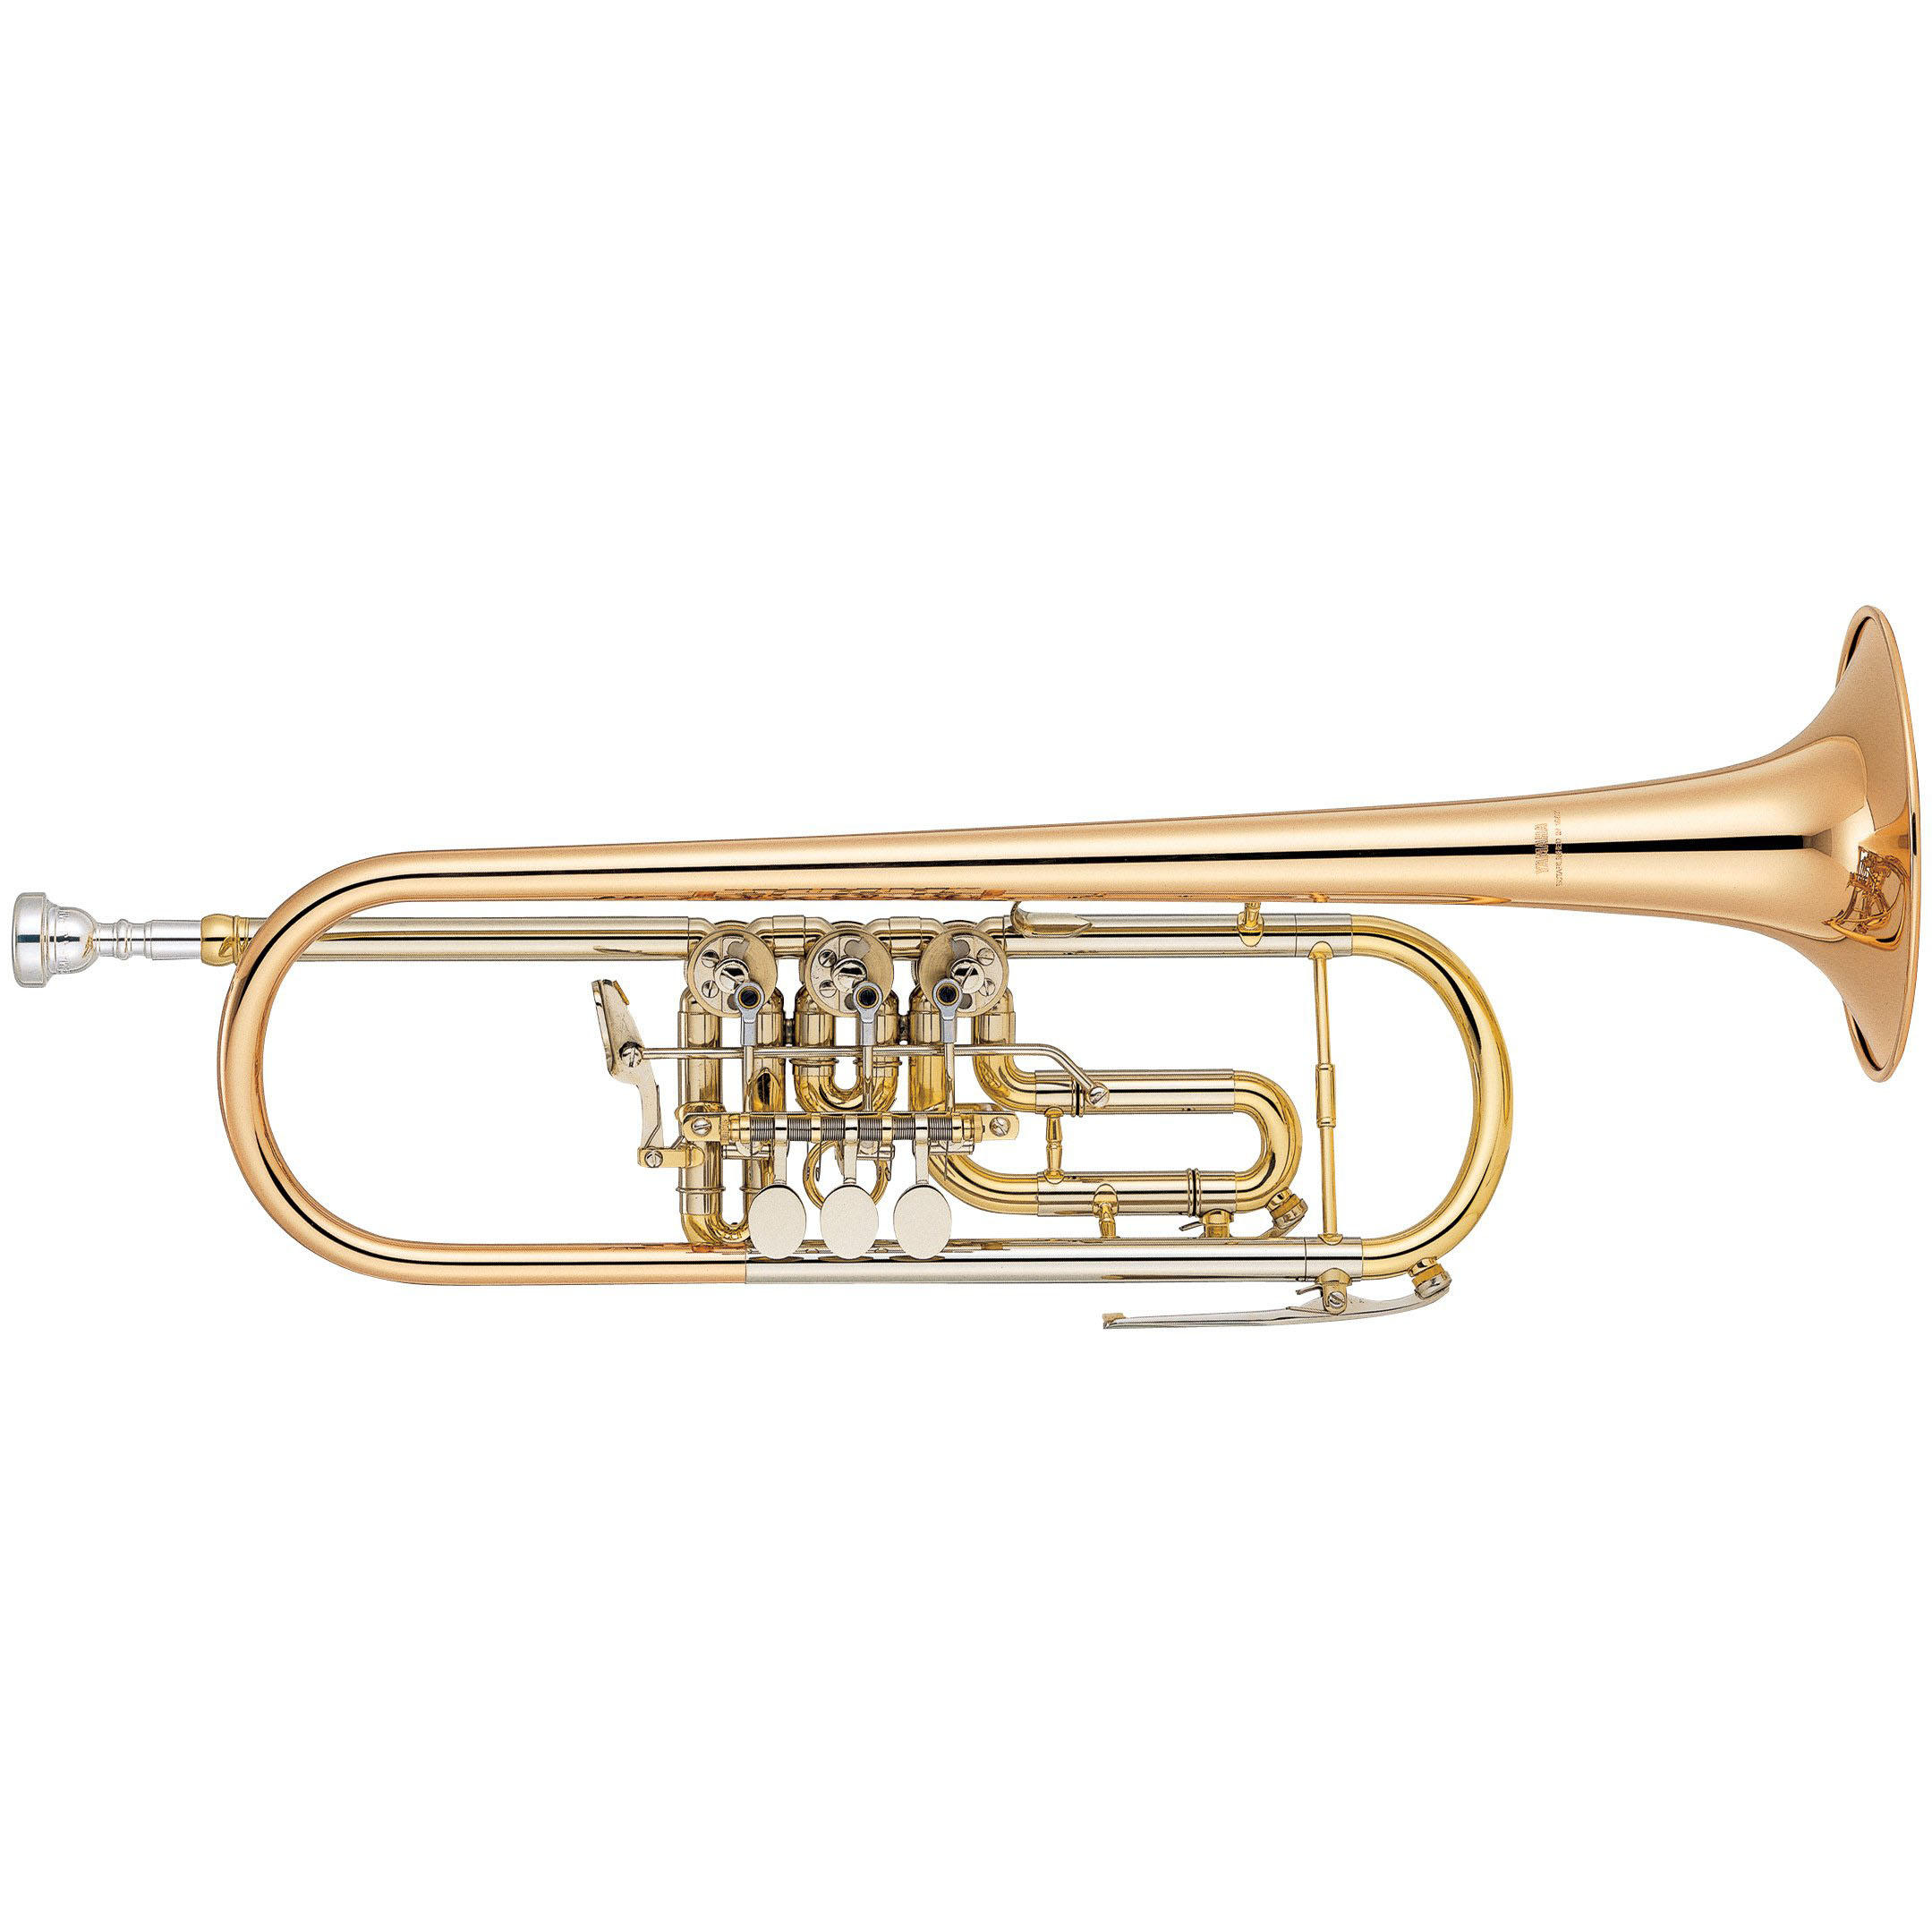 Купить трубу музыкальный инструмент. Yamaha YTR-2330s. Труба Yamaha YTR-2330s. Cerveny CTR 701ry-o - труба BB.